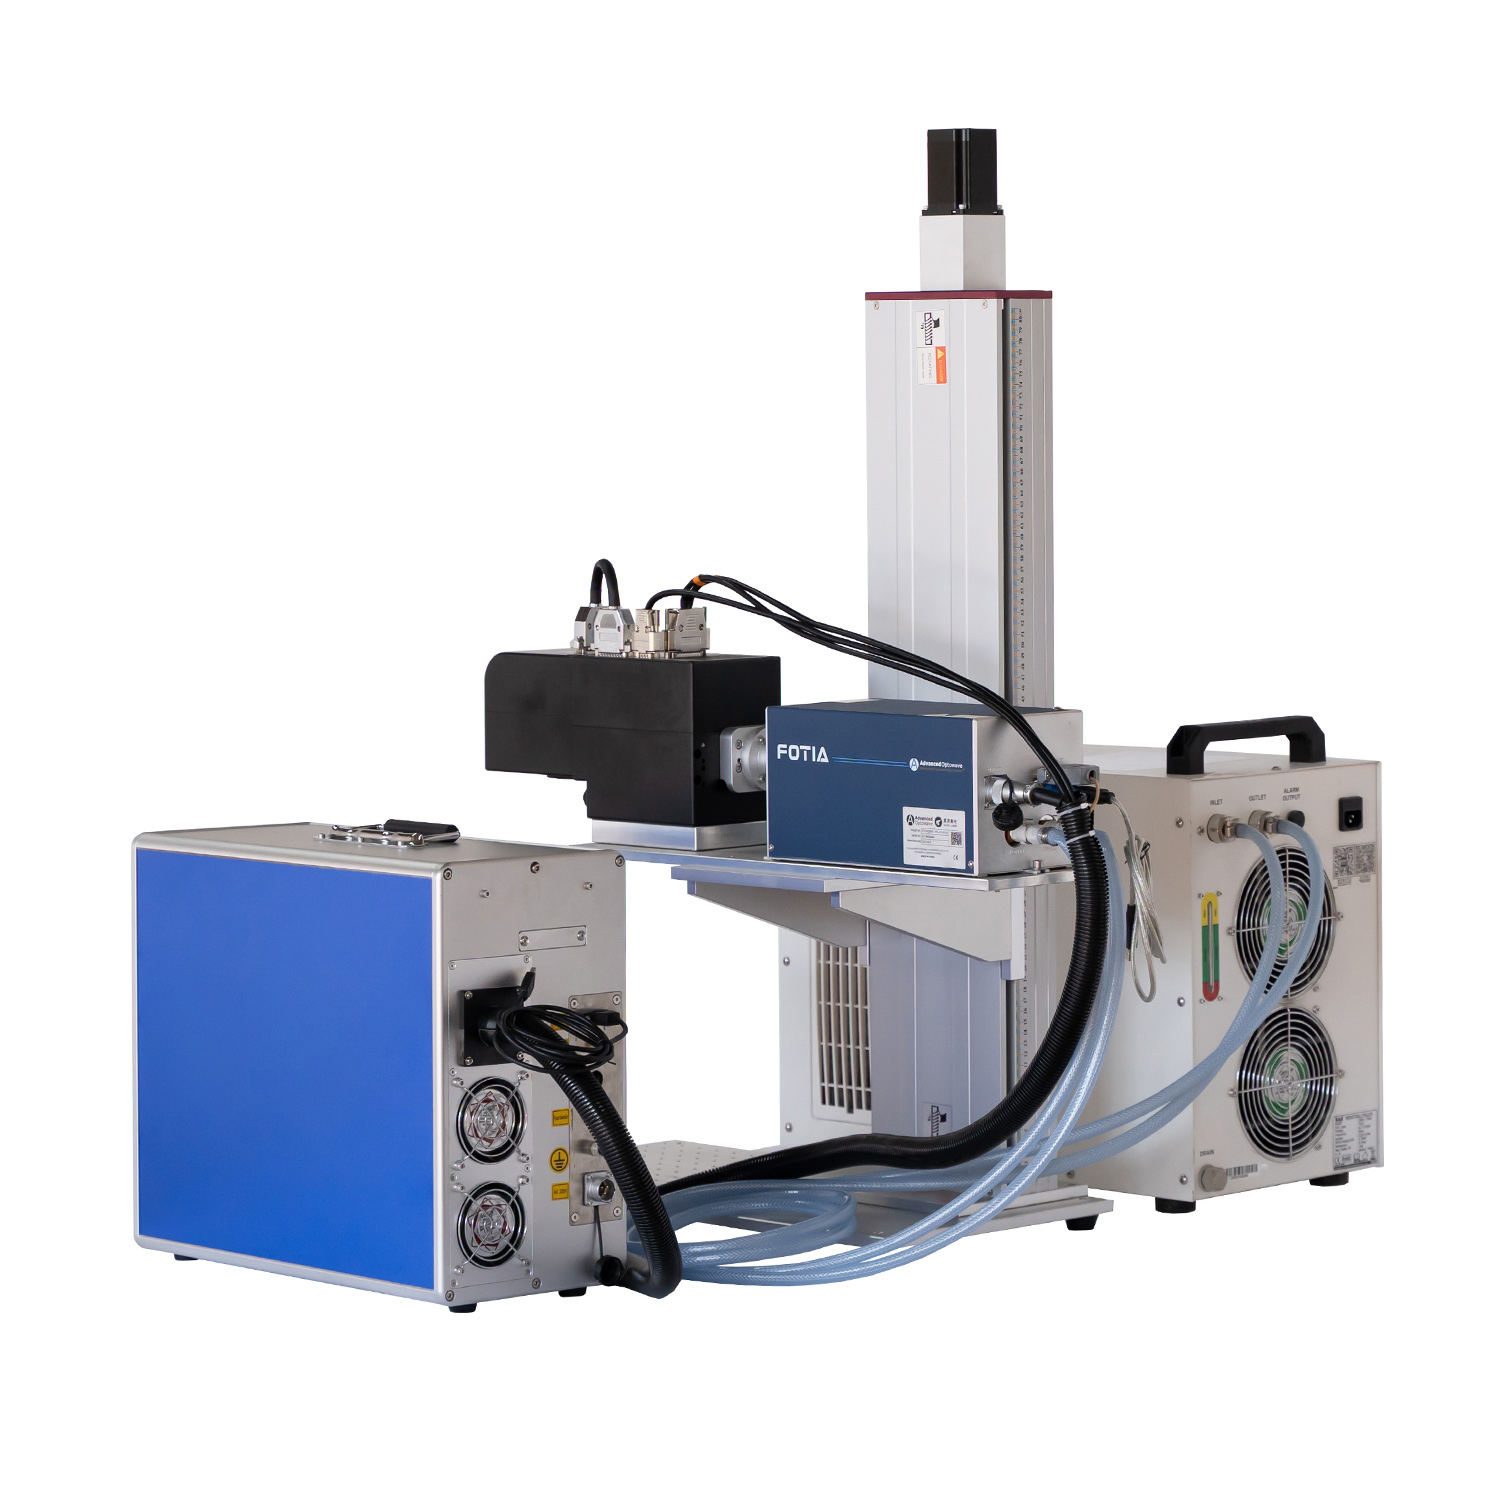 Dynamic Focus 3D 3W 5W 10W 15W JPT Huaray UV Laser Marking Engraving Cutting Machine